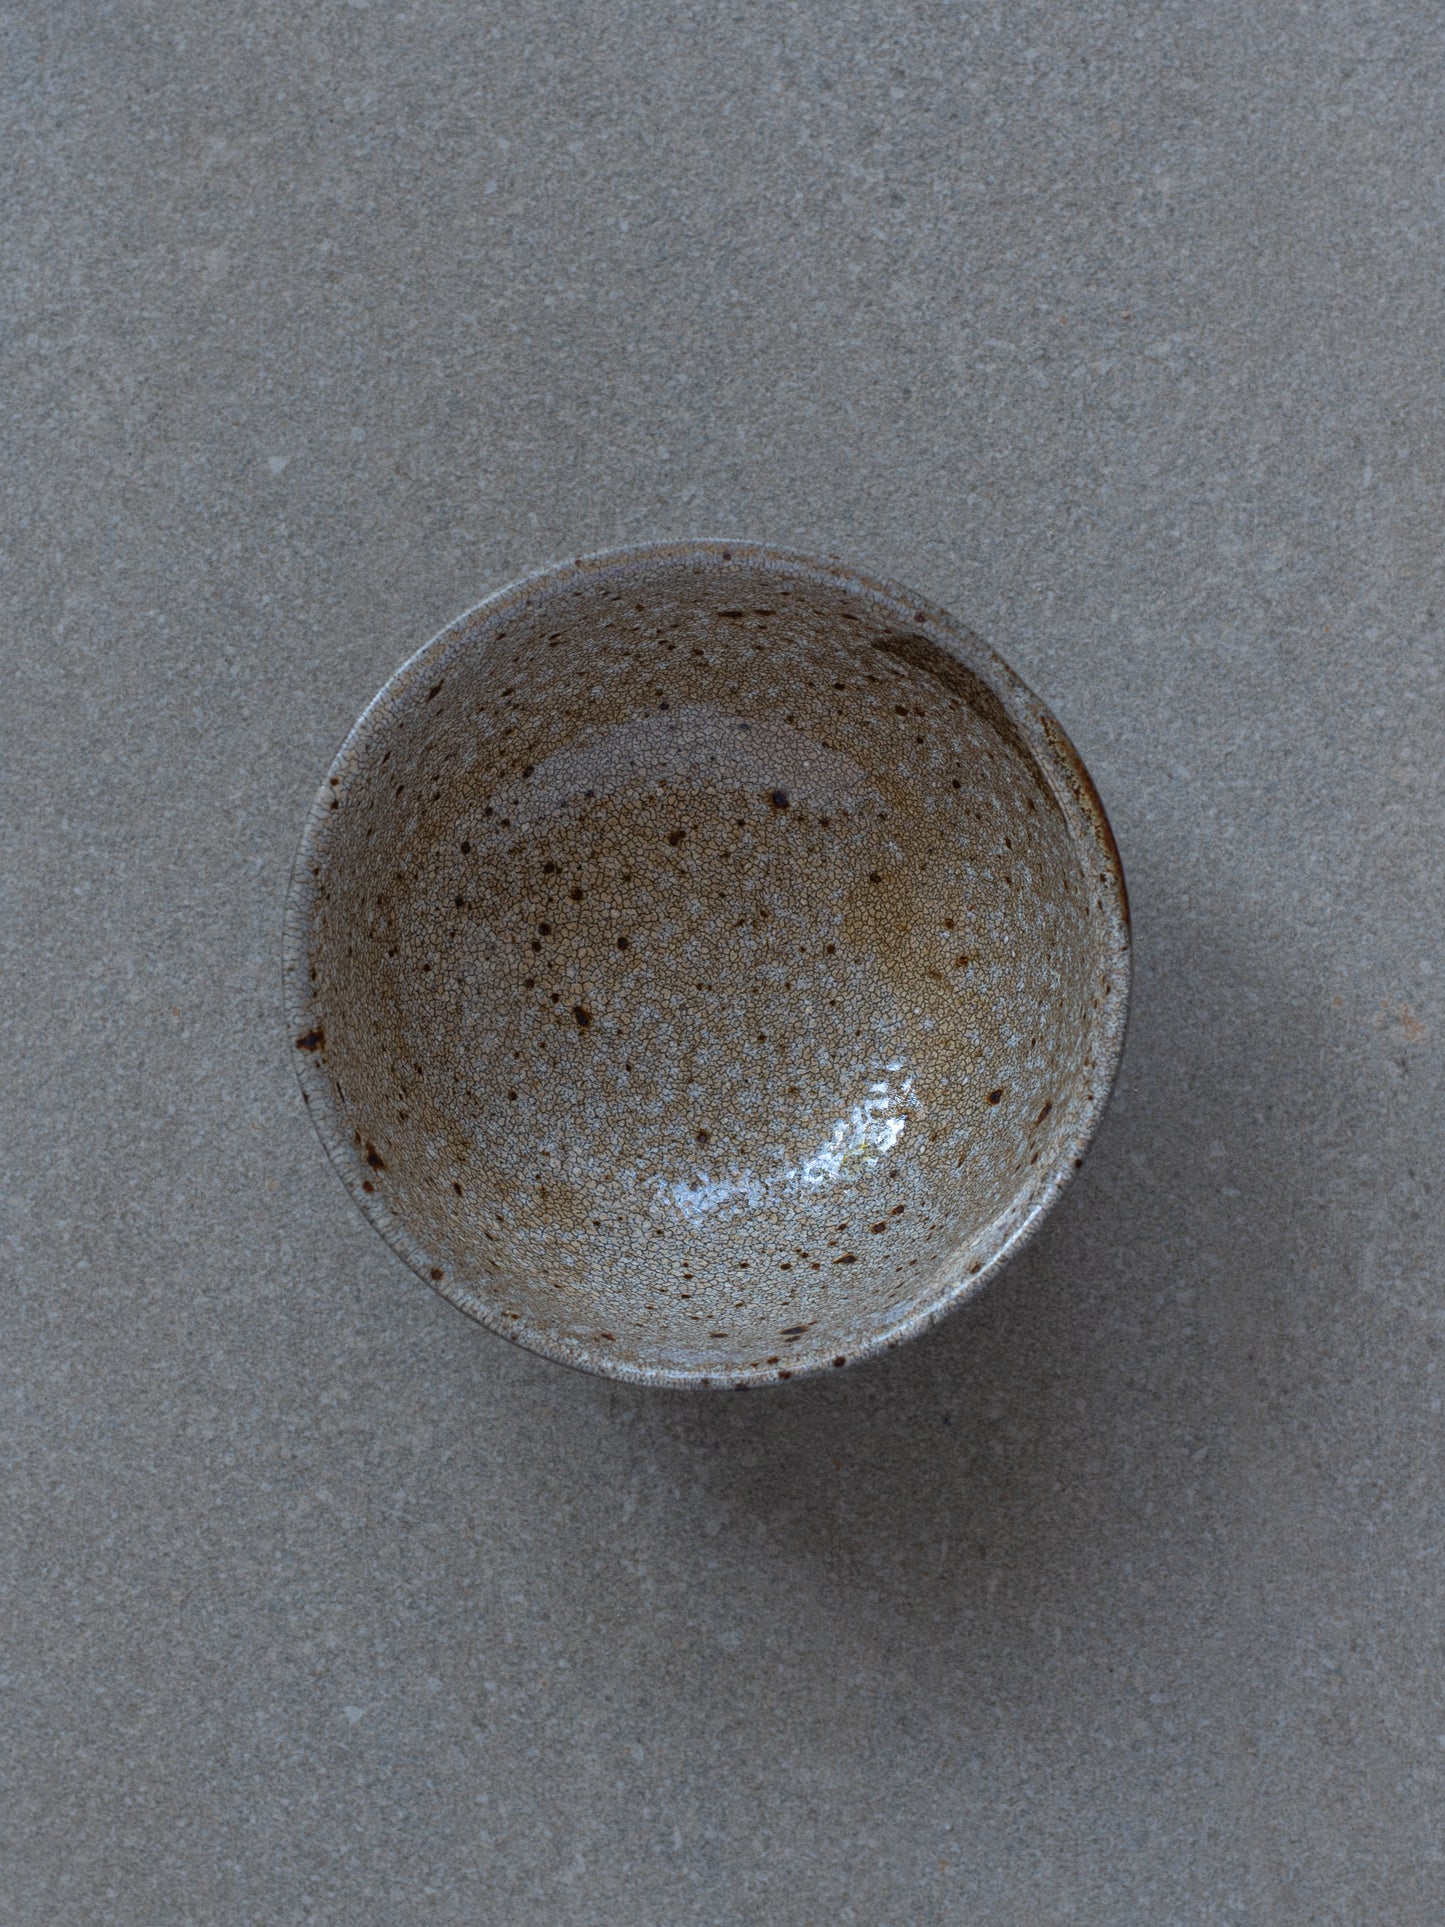 Ryuun Kairagi Bowl